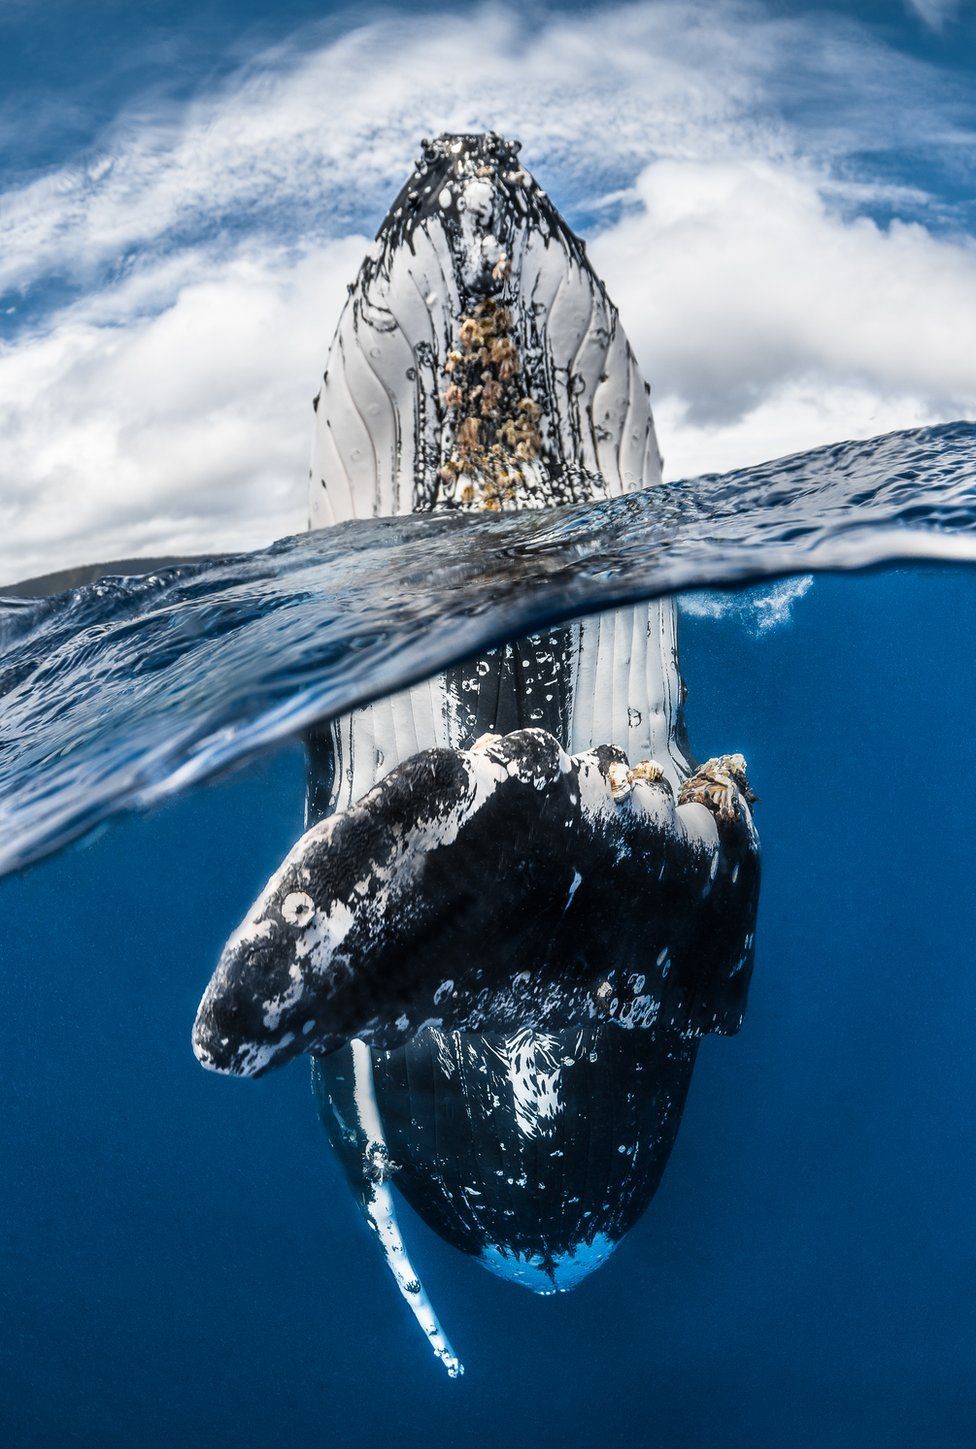 A humpback whale skyhopping.